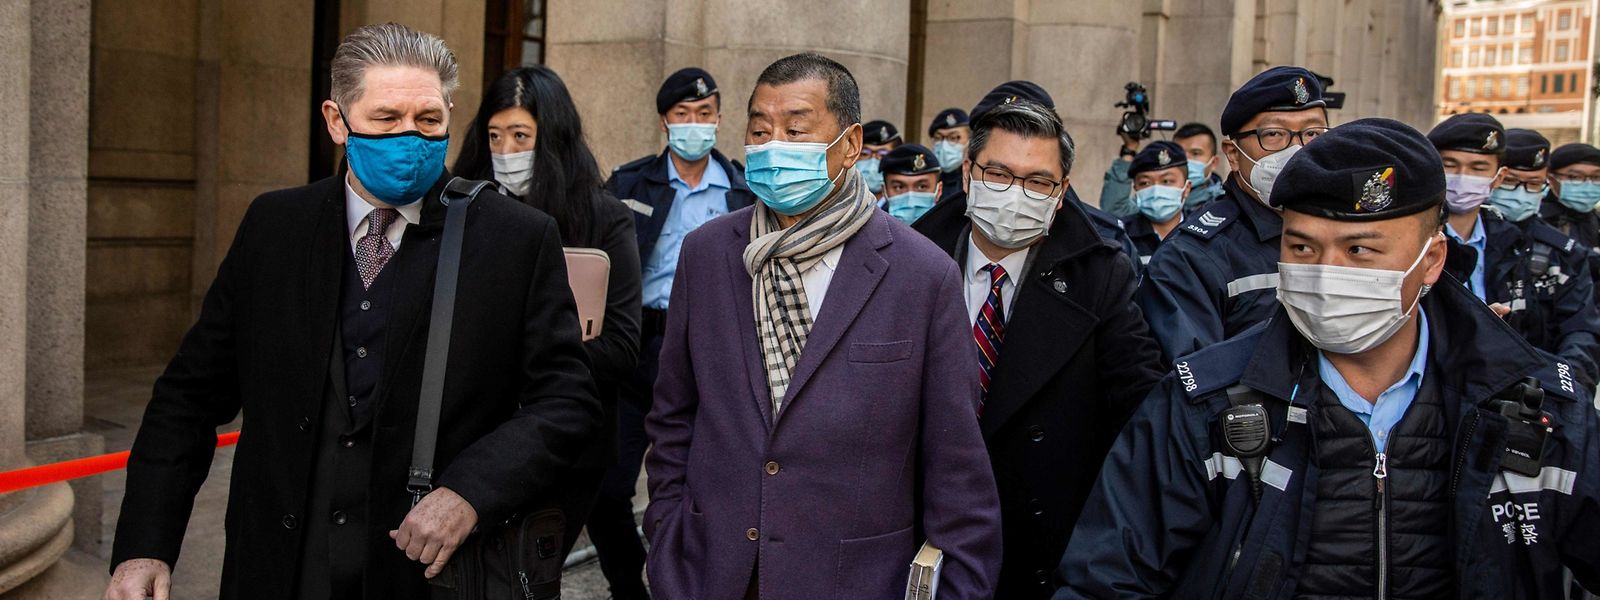 Bei einer Verurteilung drohen Aktivist Jimmy Lai (Mitte) im schlimmsten Fall eine lebenslange Haftstrafe.